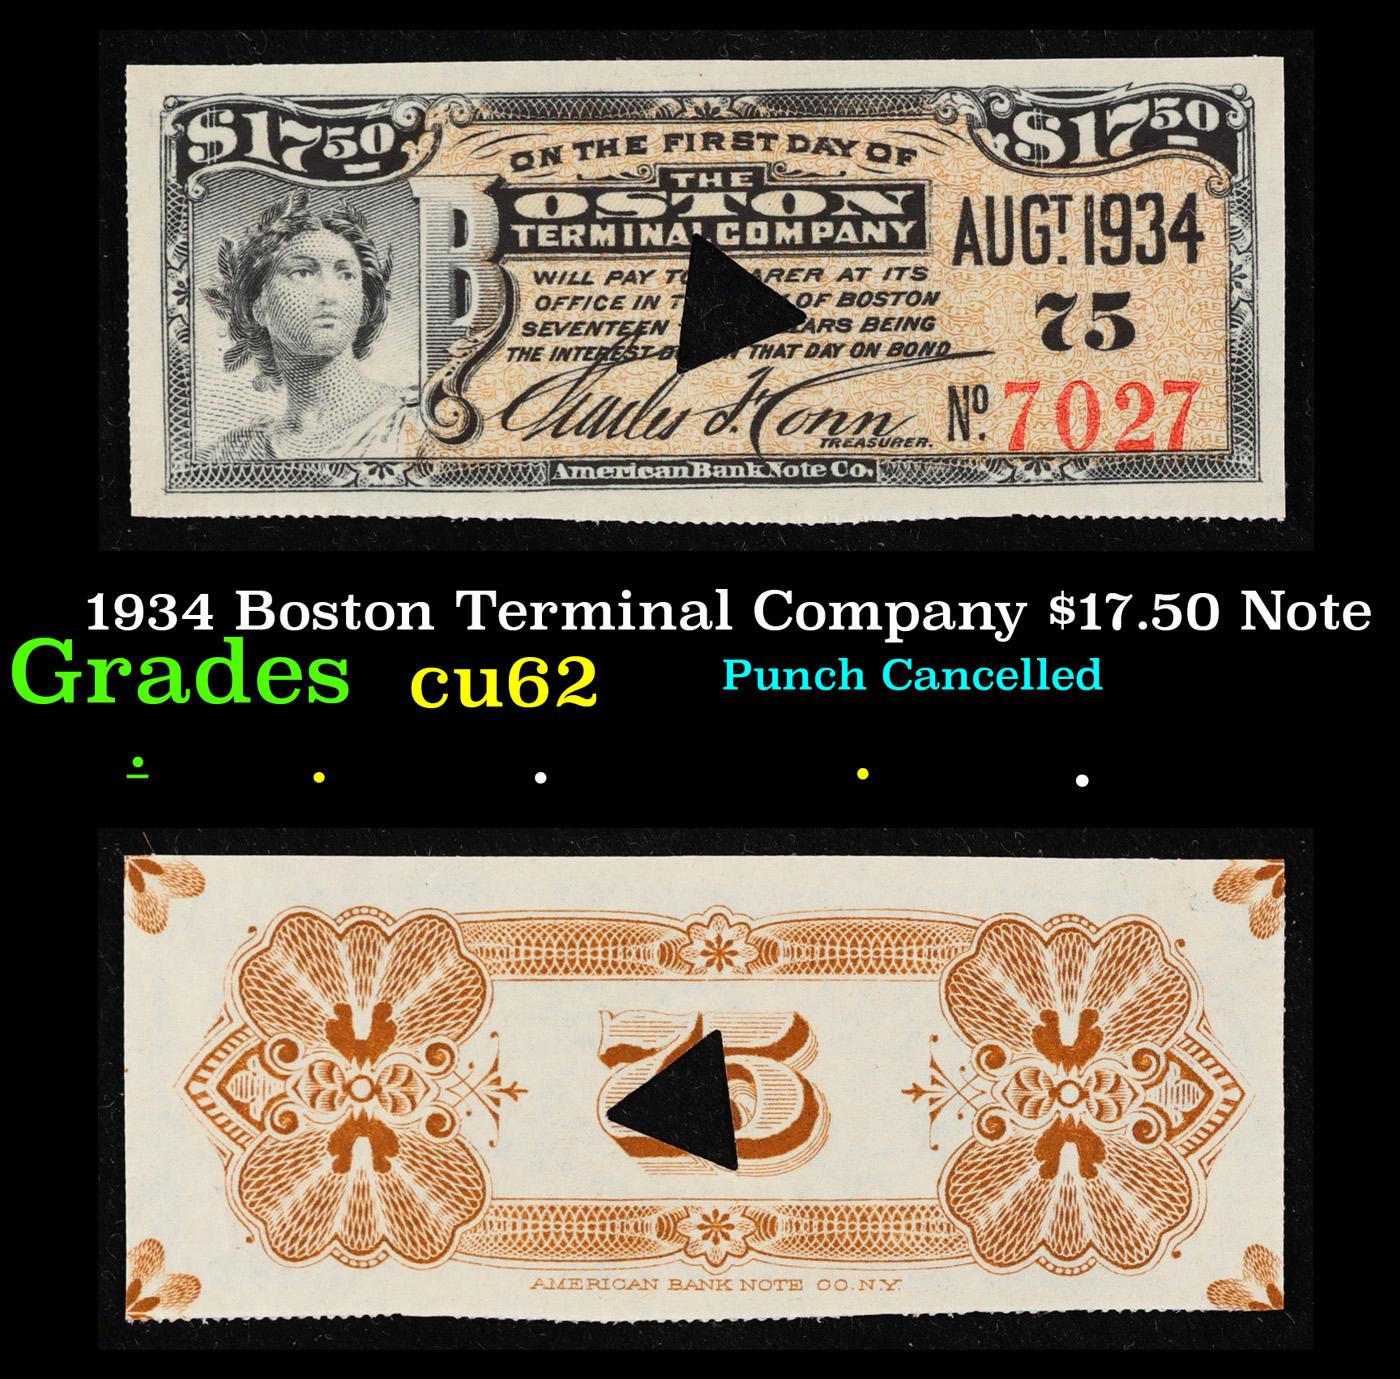 1905 Boston Terminal Company $17.50 Note Grades Select CU